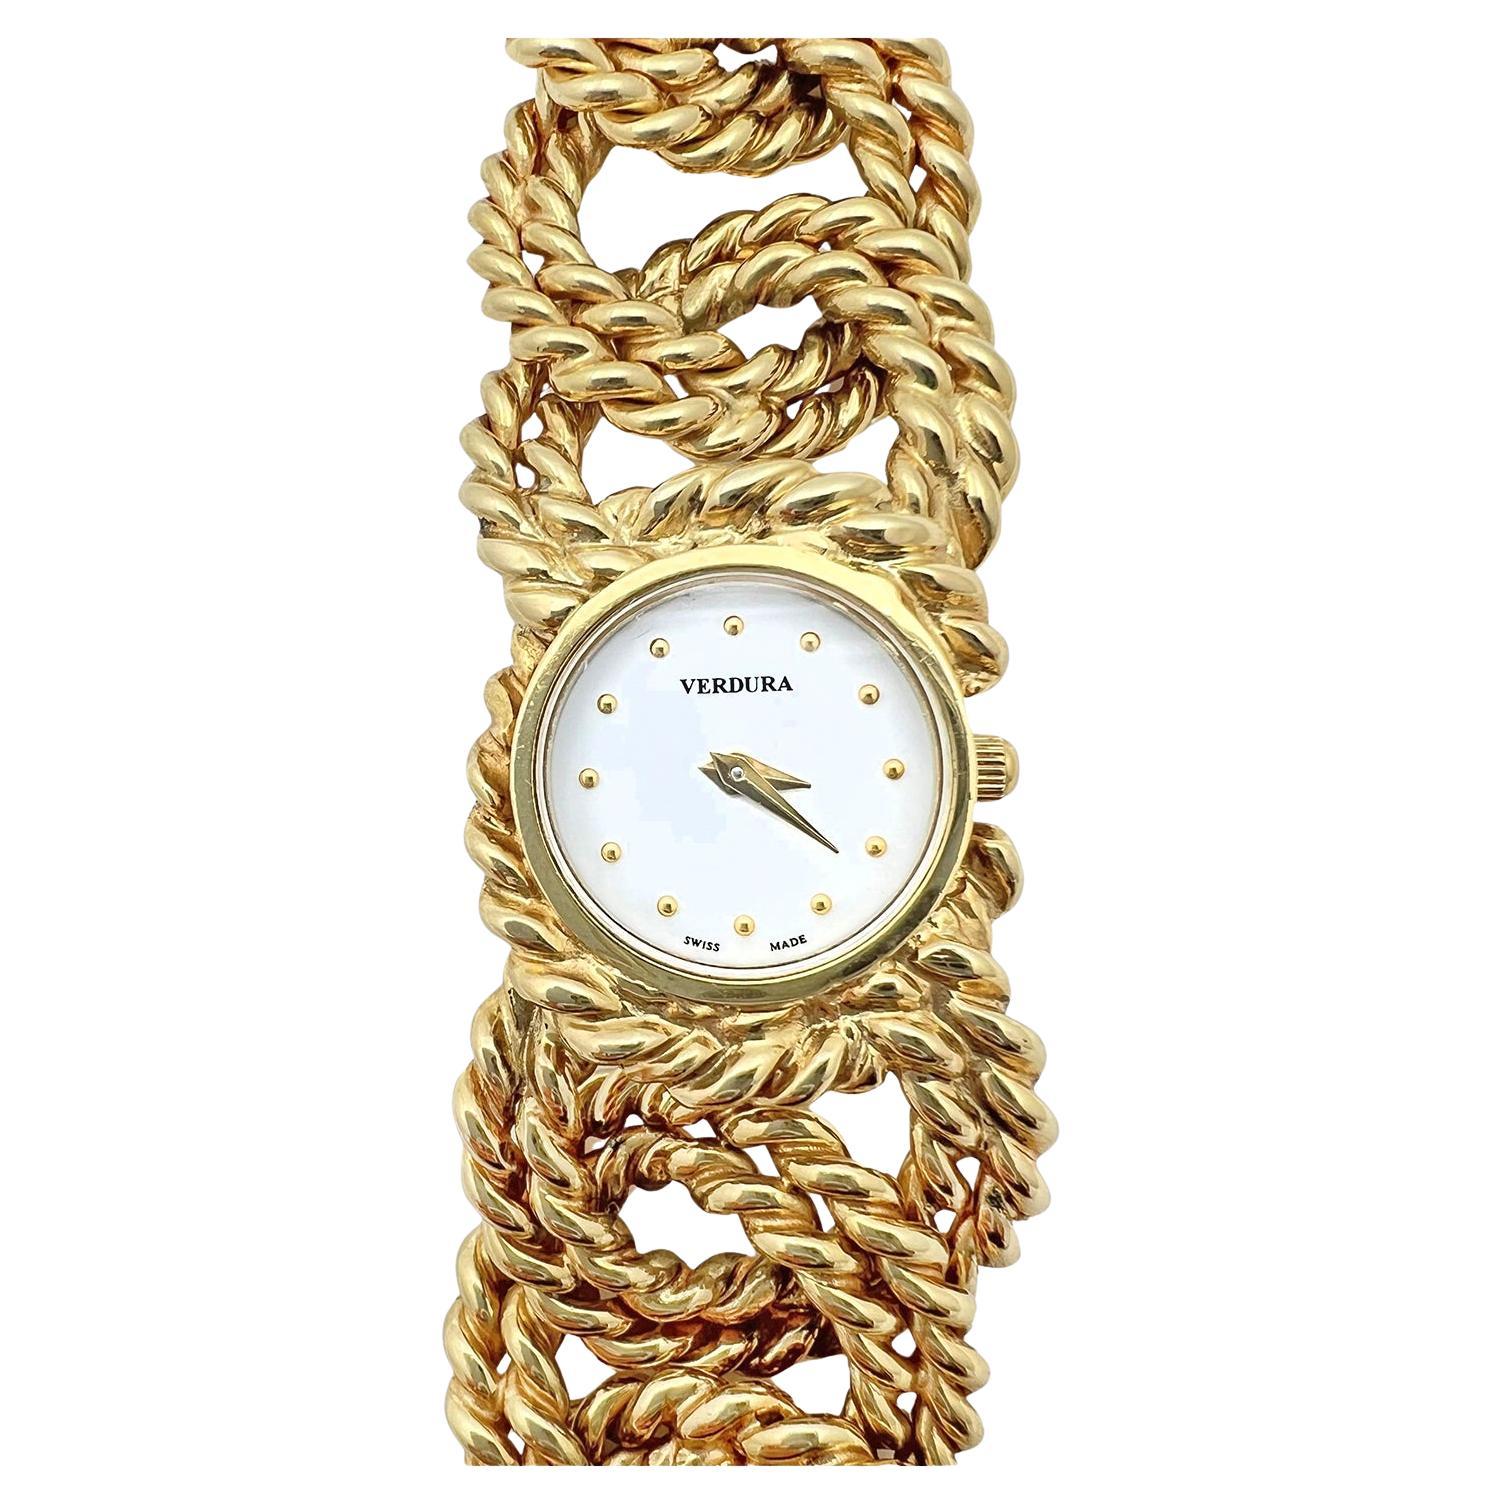 Verdura Armbanduhr mit doppeltem Gliederarmband aus 18 Karat Gelbgold.  Rundes, weißes Lackzifferblatt mit aufgesetzten goldenen Punkten als Stundenmarkierungen.  Zifferblatt mit der Aufschrift 